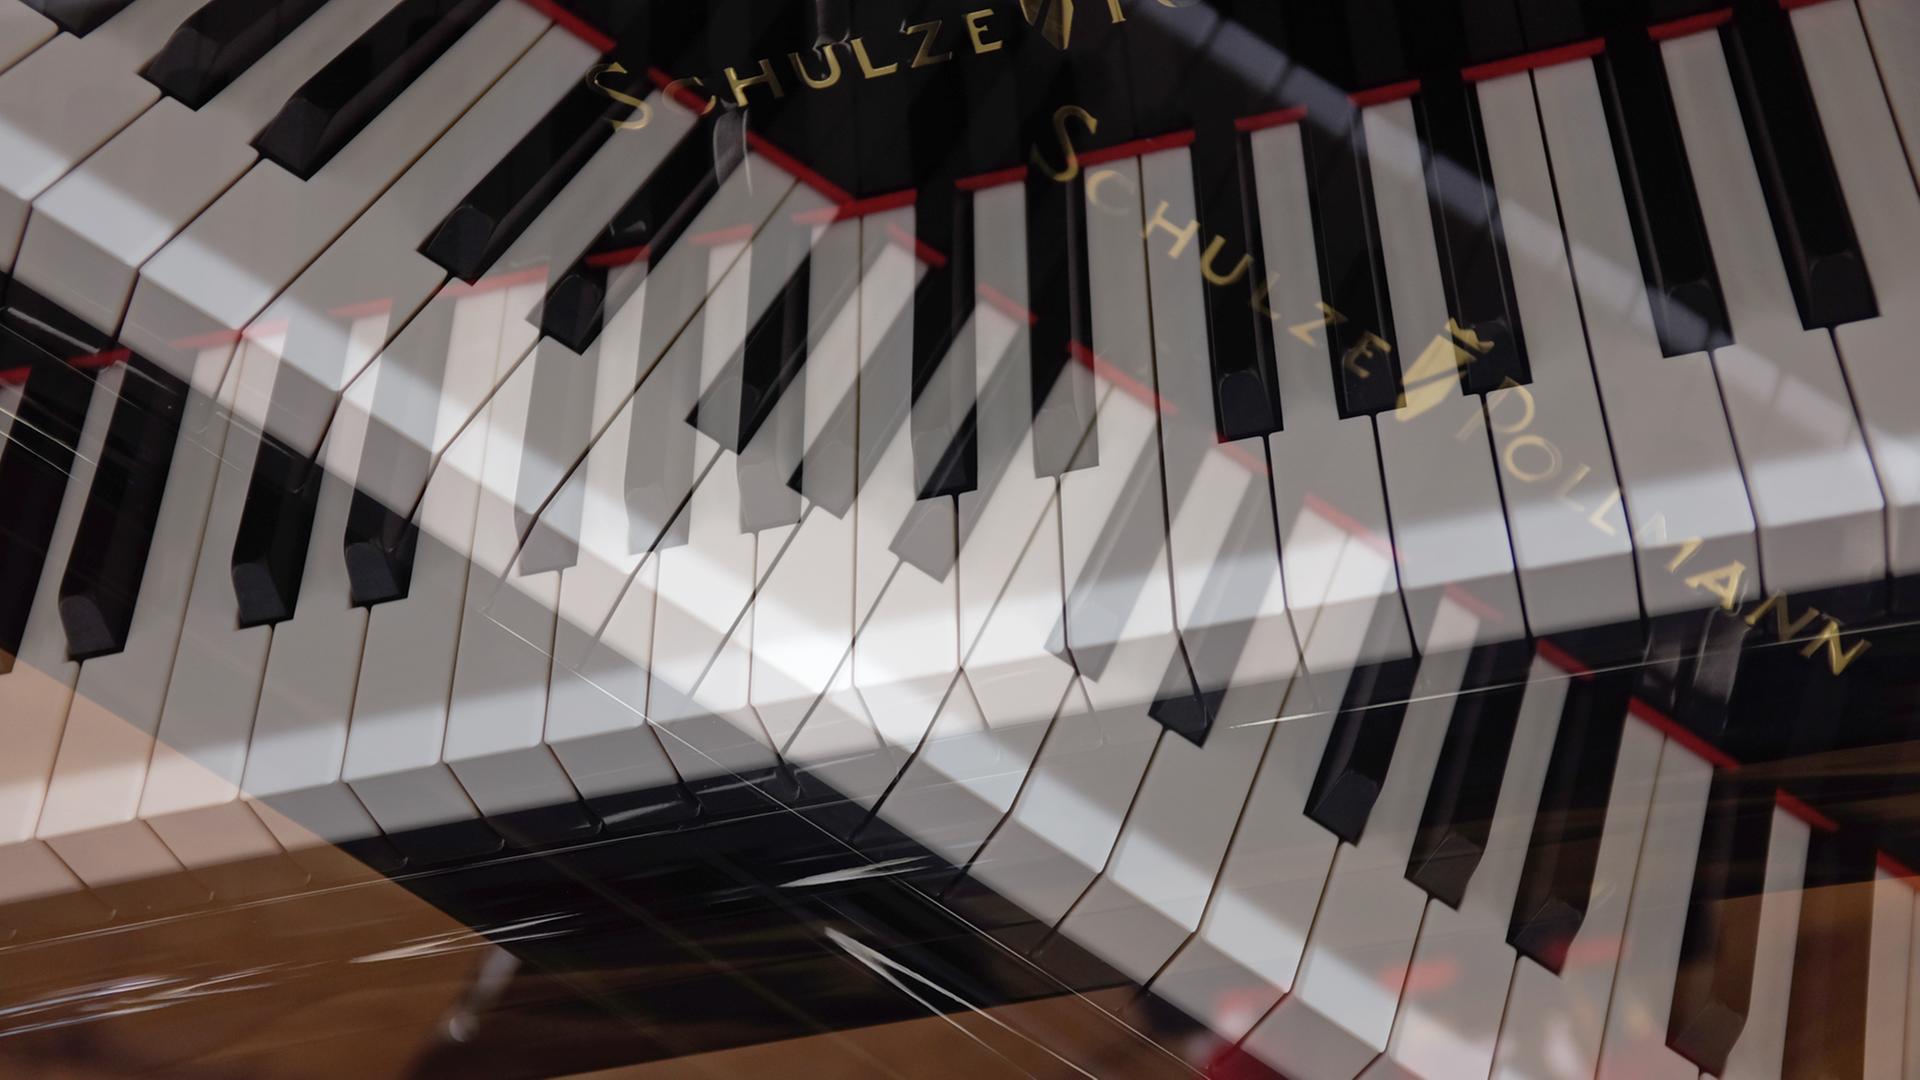 Ein mehrfach belichtetes Foto zeigt zwei gekreuzte Piano-Klaviaturen.